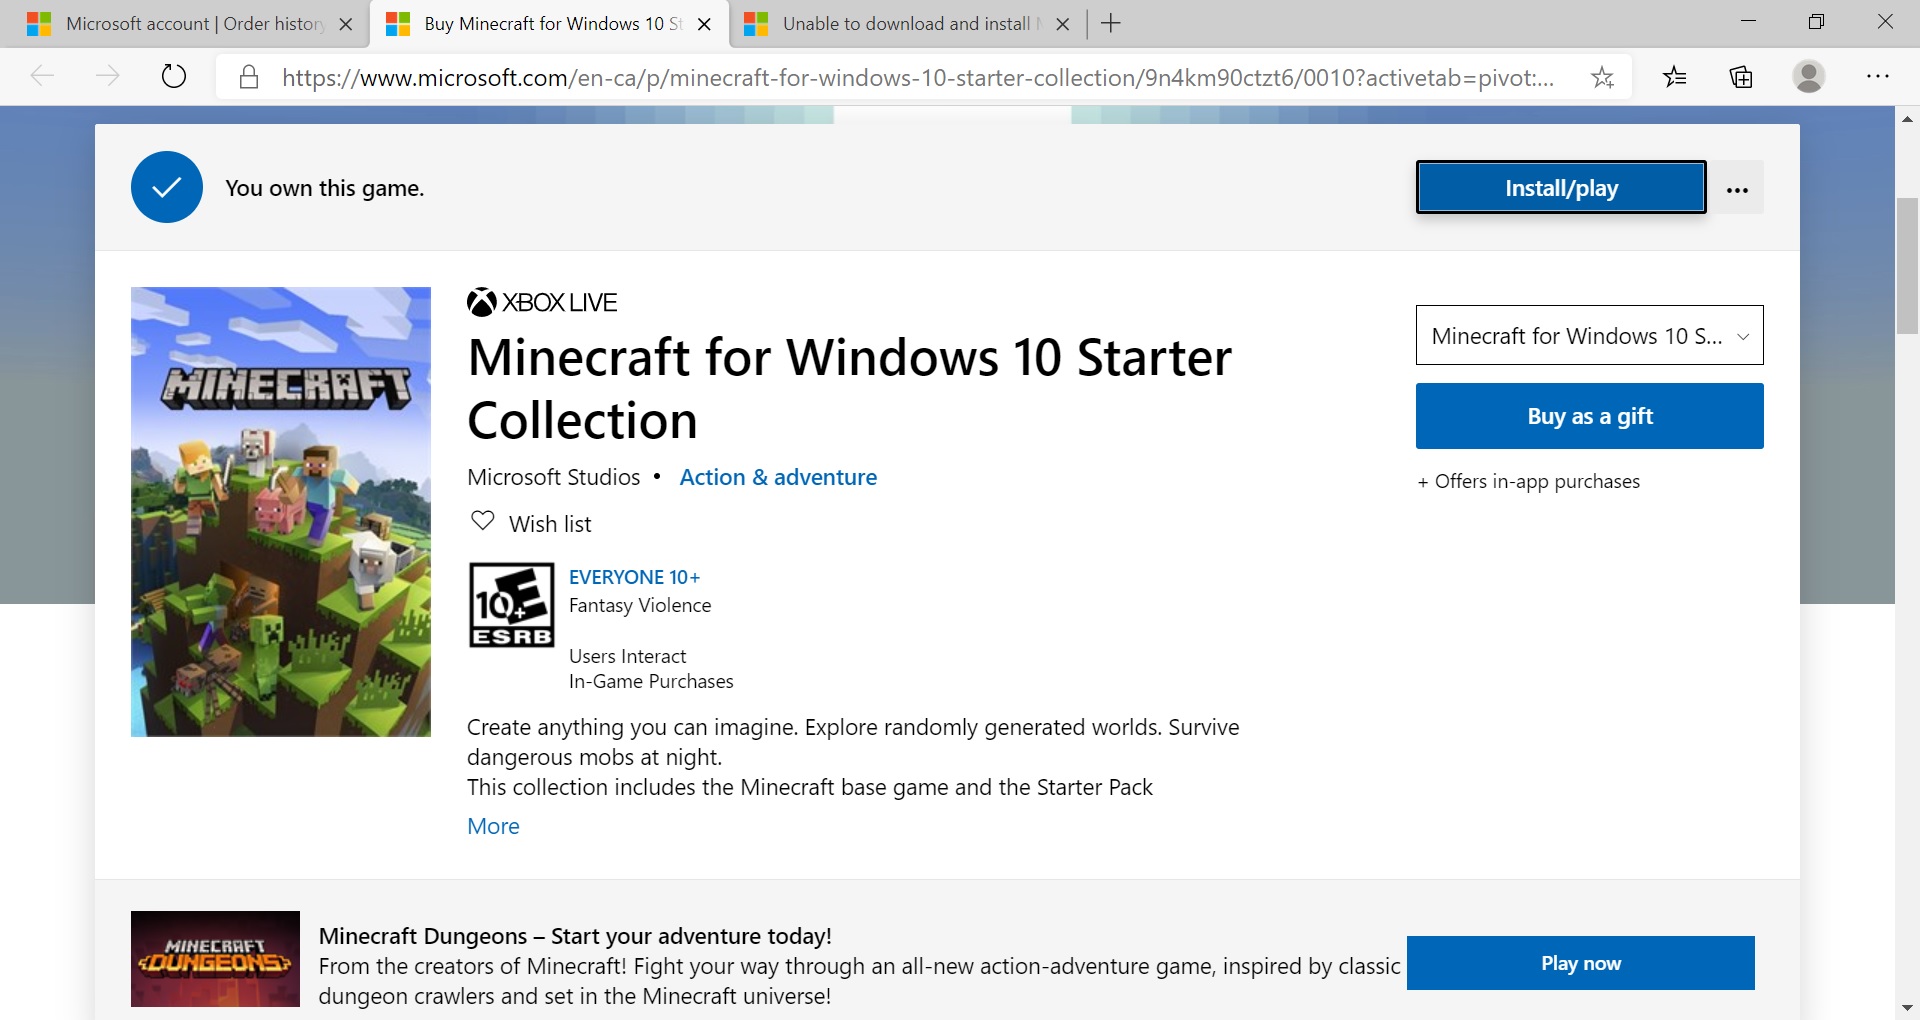 Download Minecraft for Windows 10 + OnLine